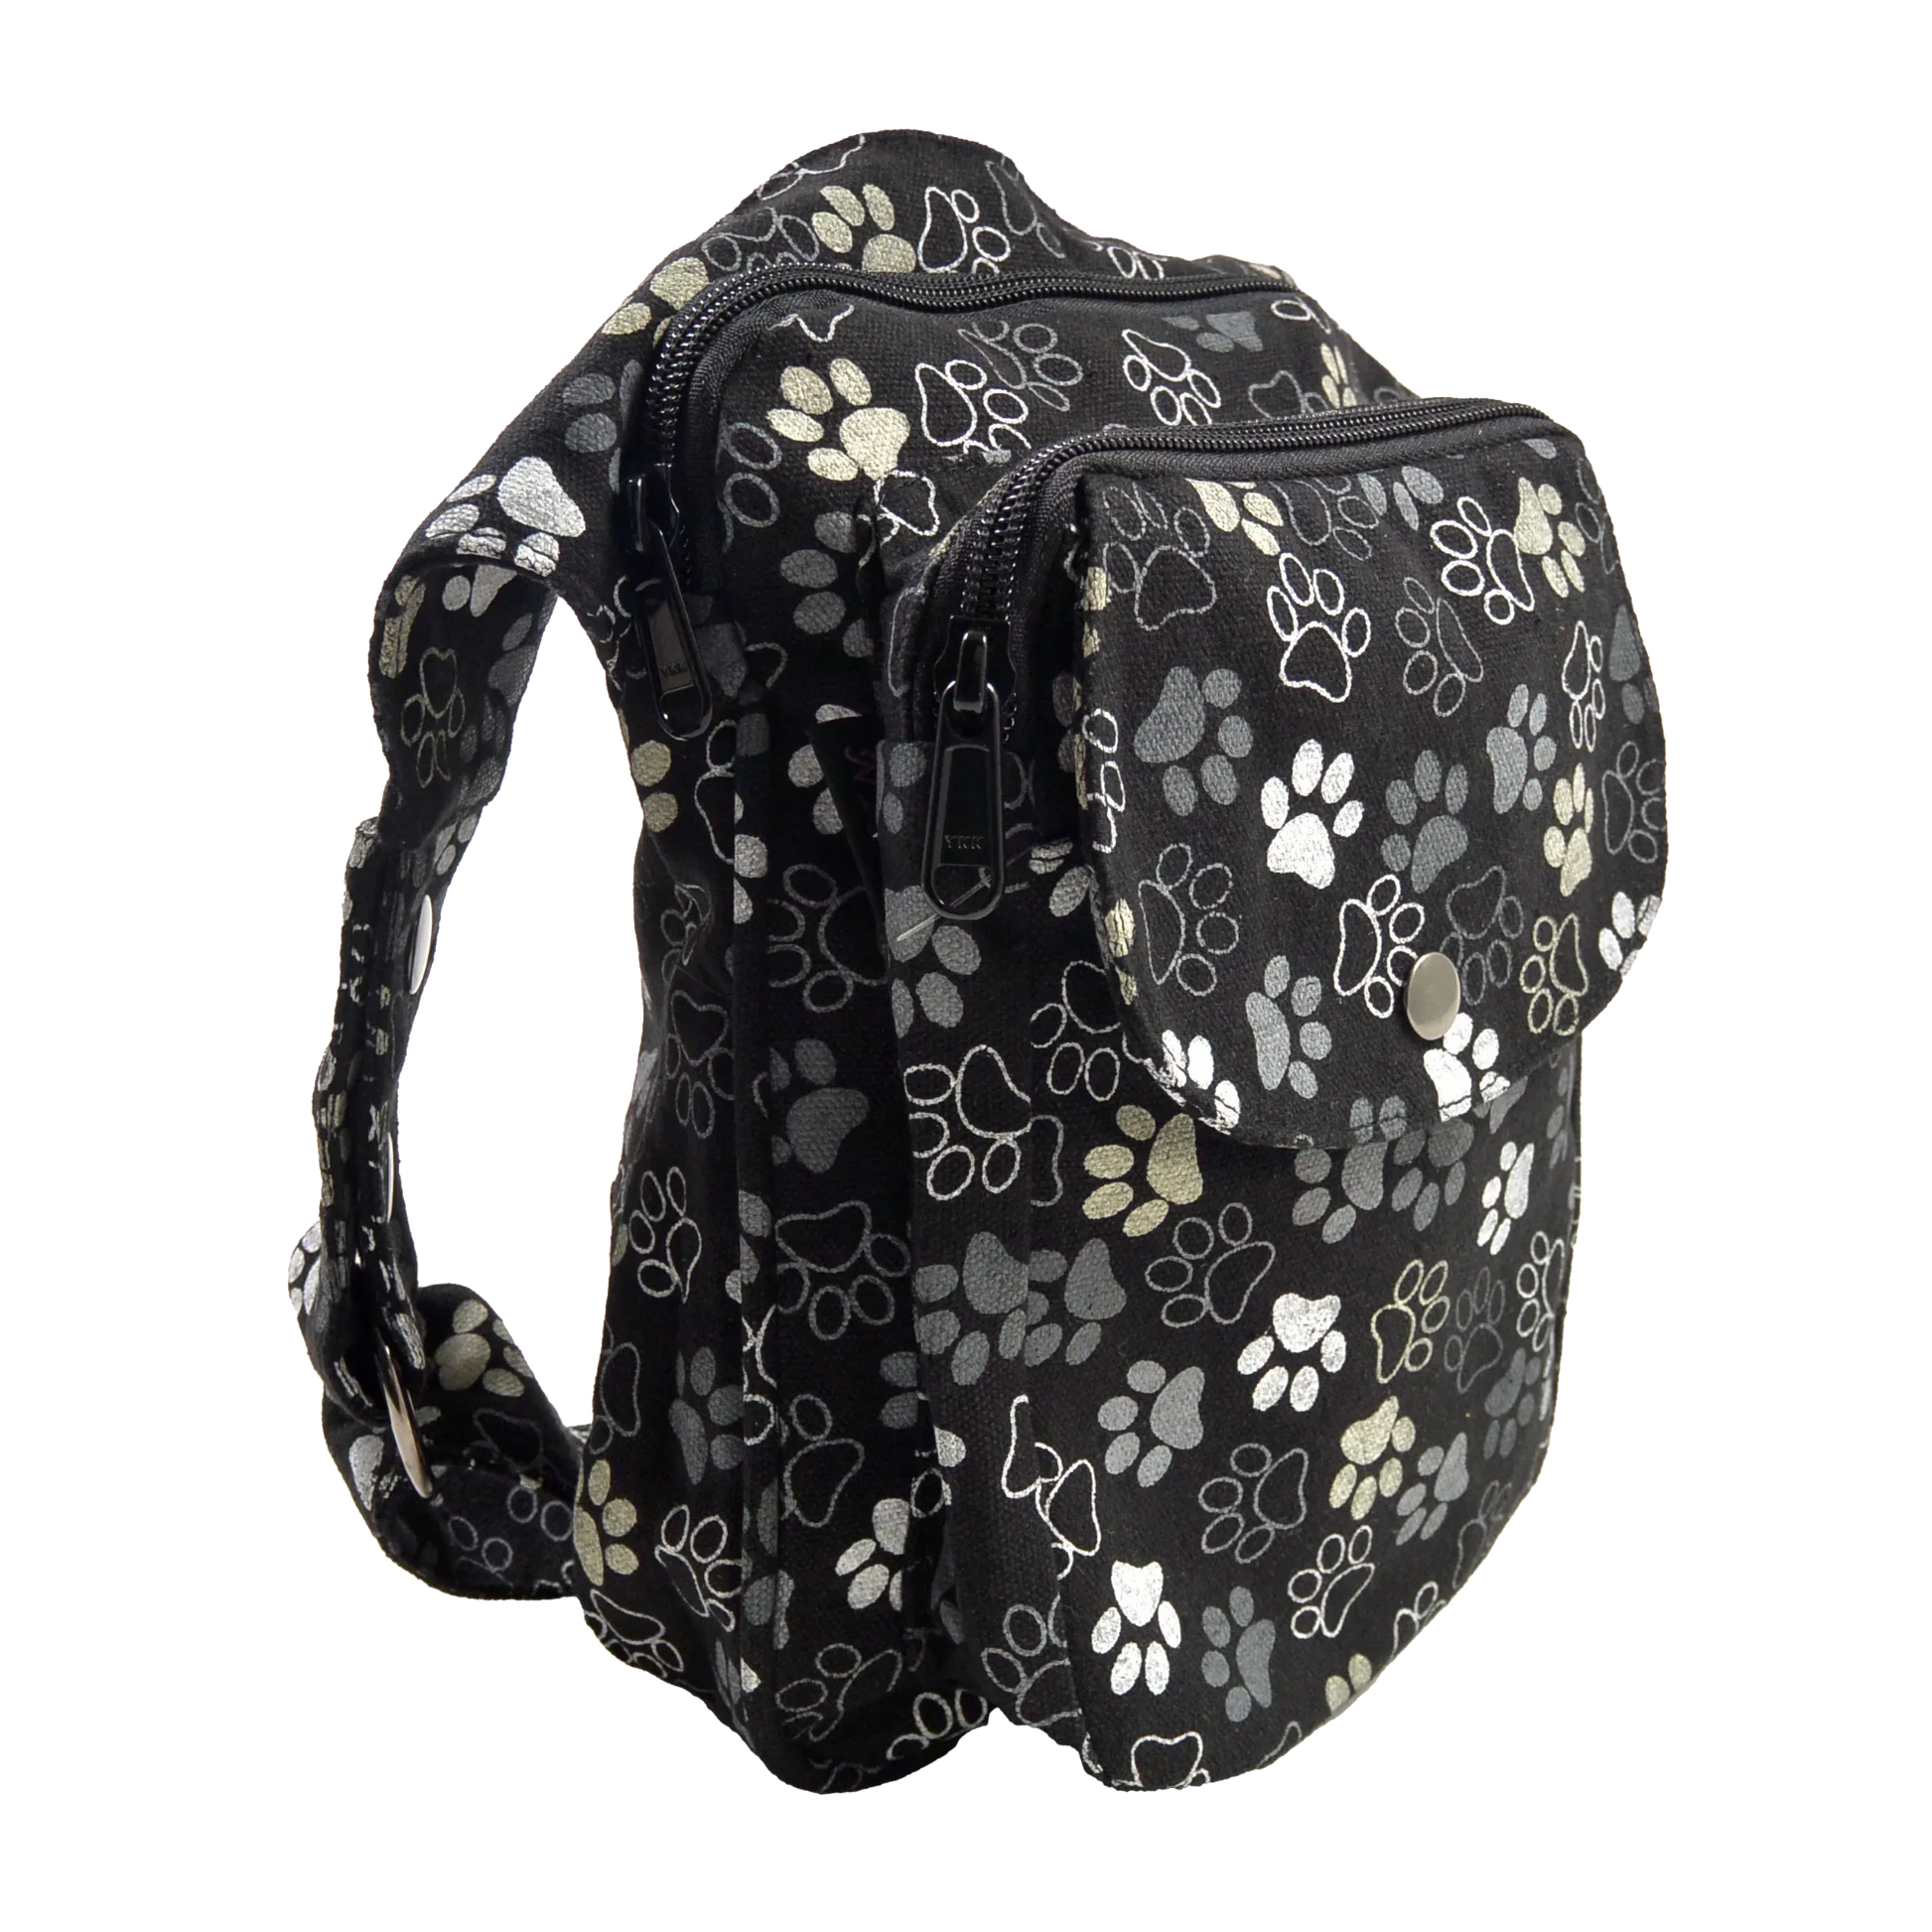 Gassi-Tasche, Hüfttasche aus Canvas Schwarz mit Hundepfoten Motiven. Zwei Reißverschlussfächer vorne.